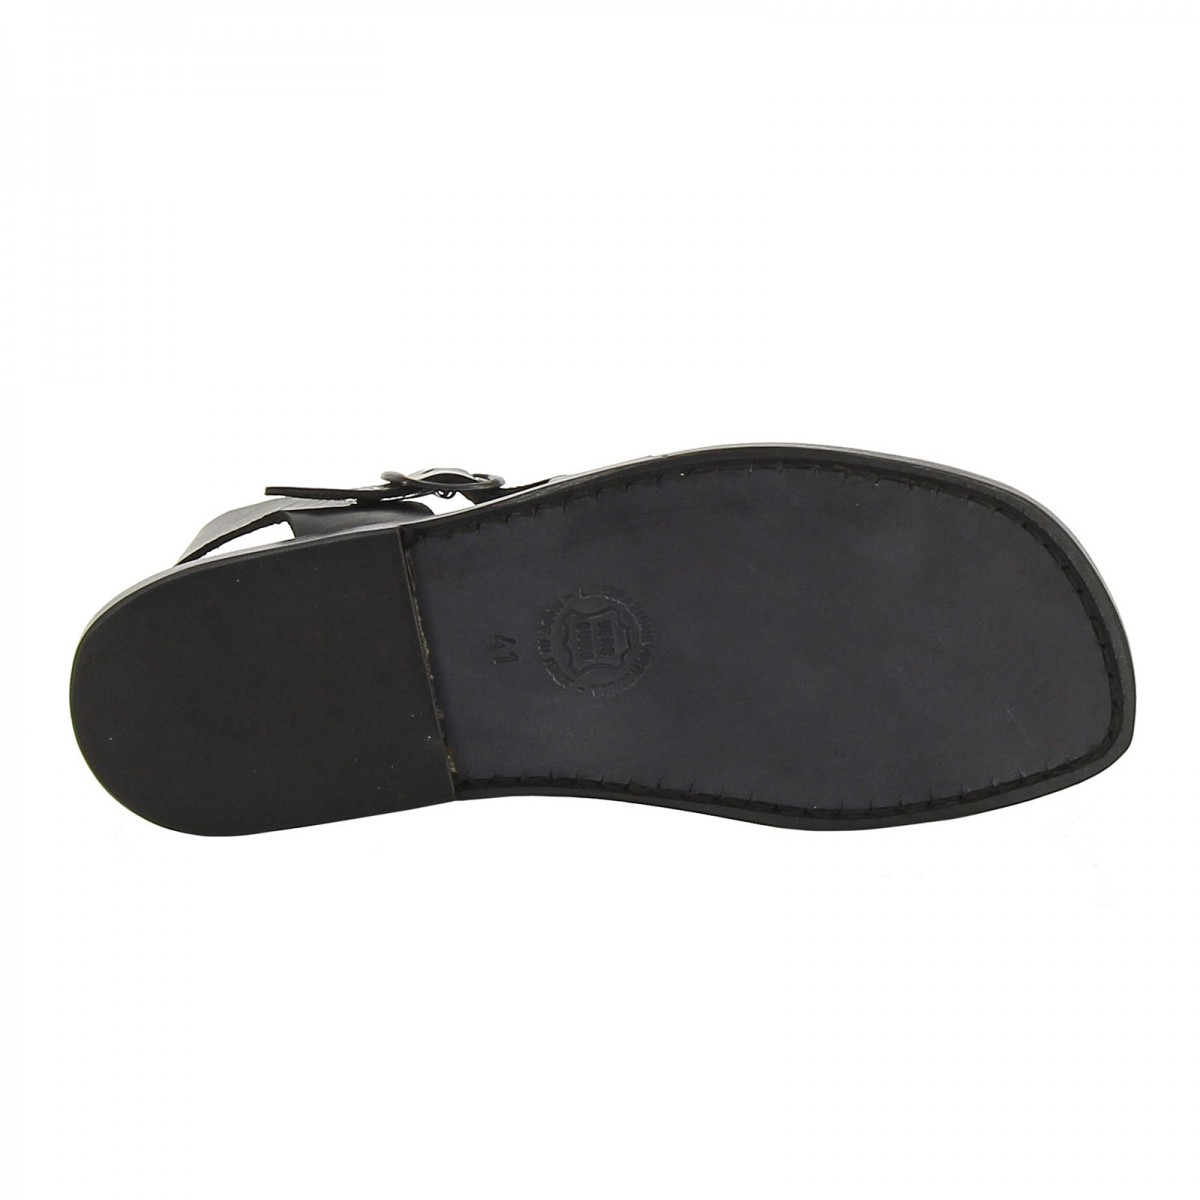 Diesel Denim Heel Sandals/ New With Box - Etsy